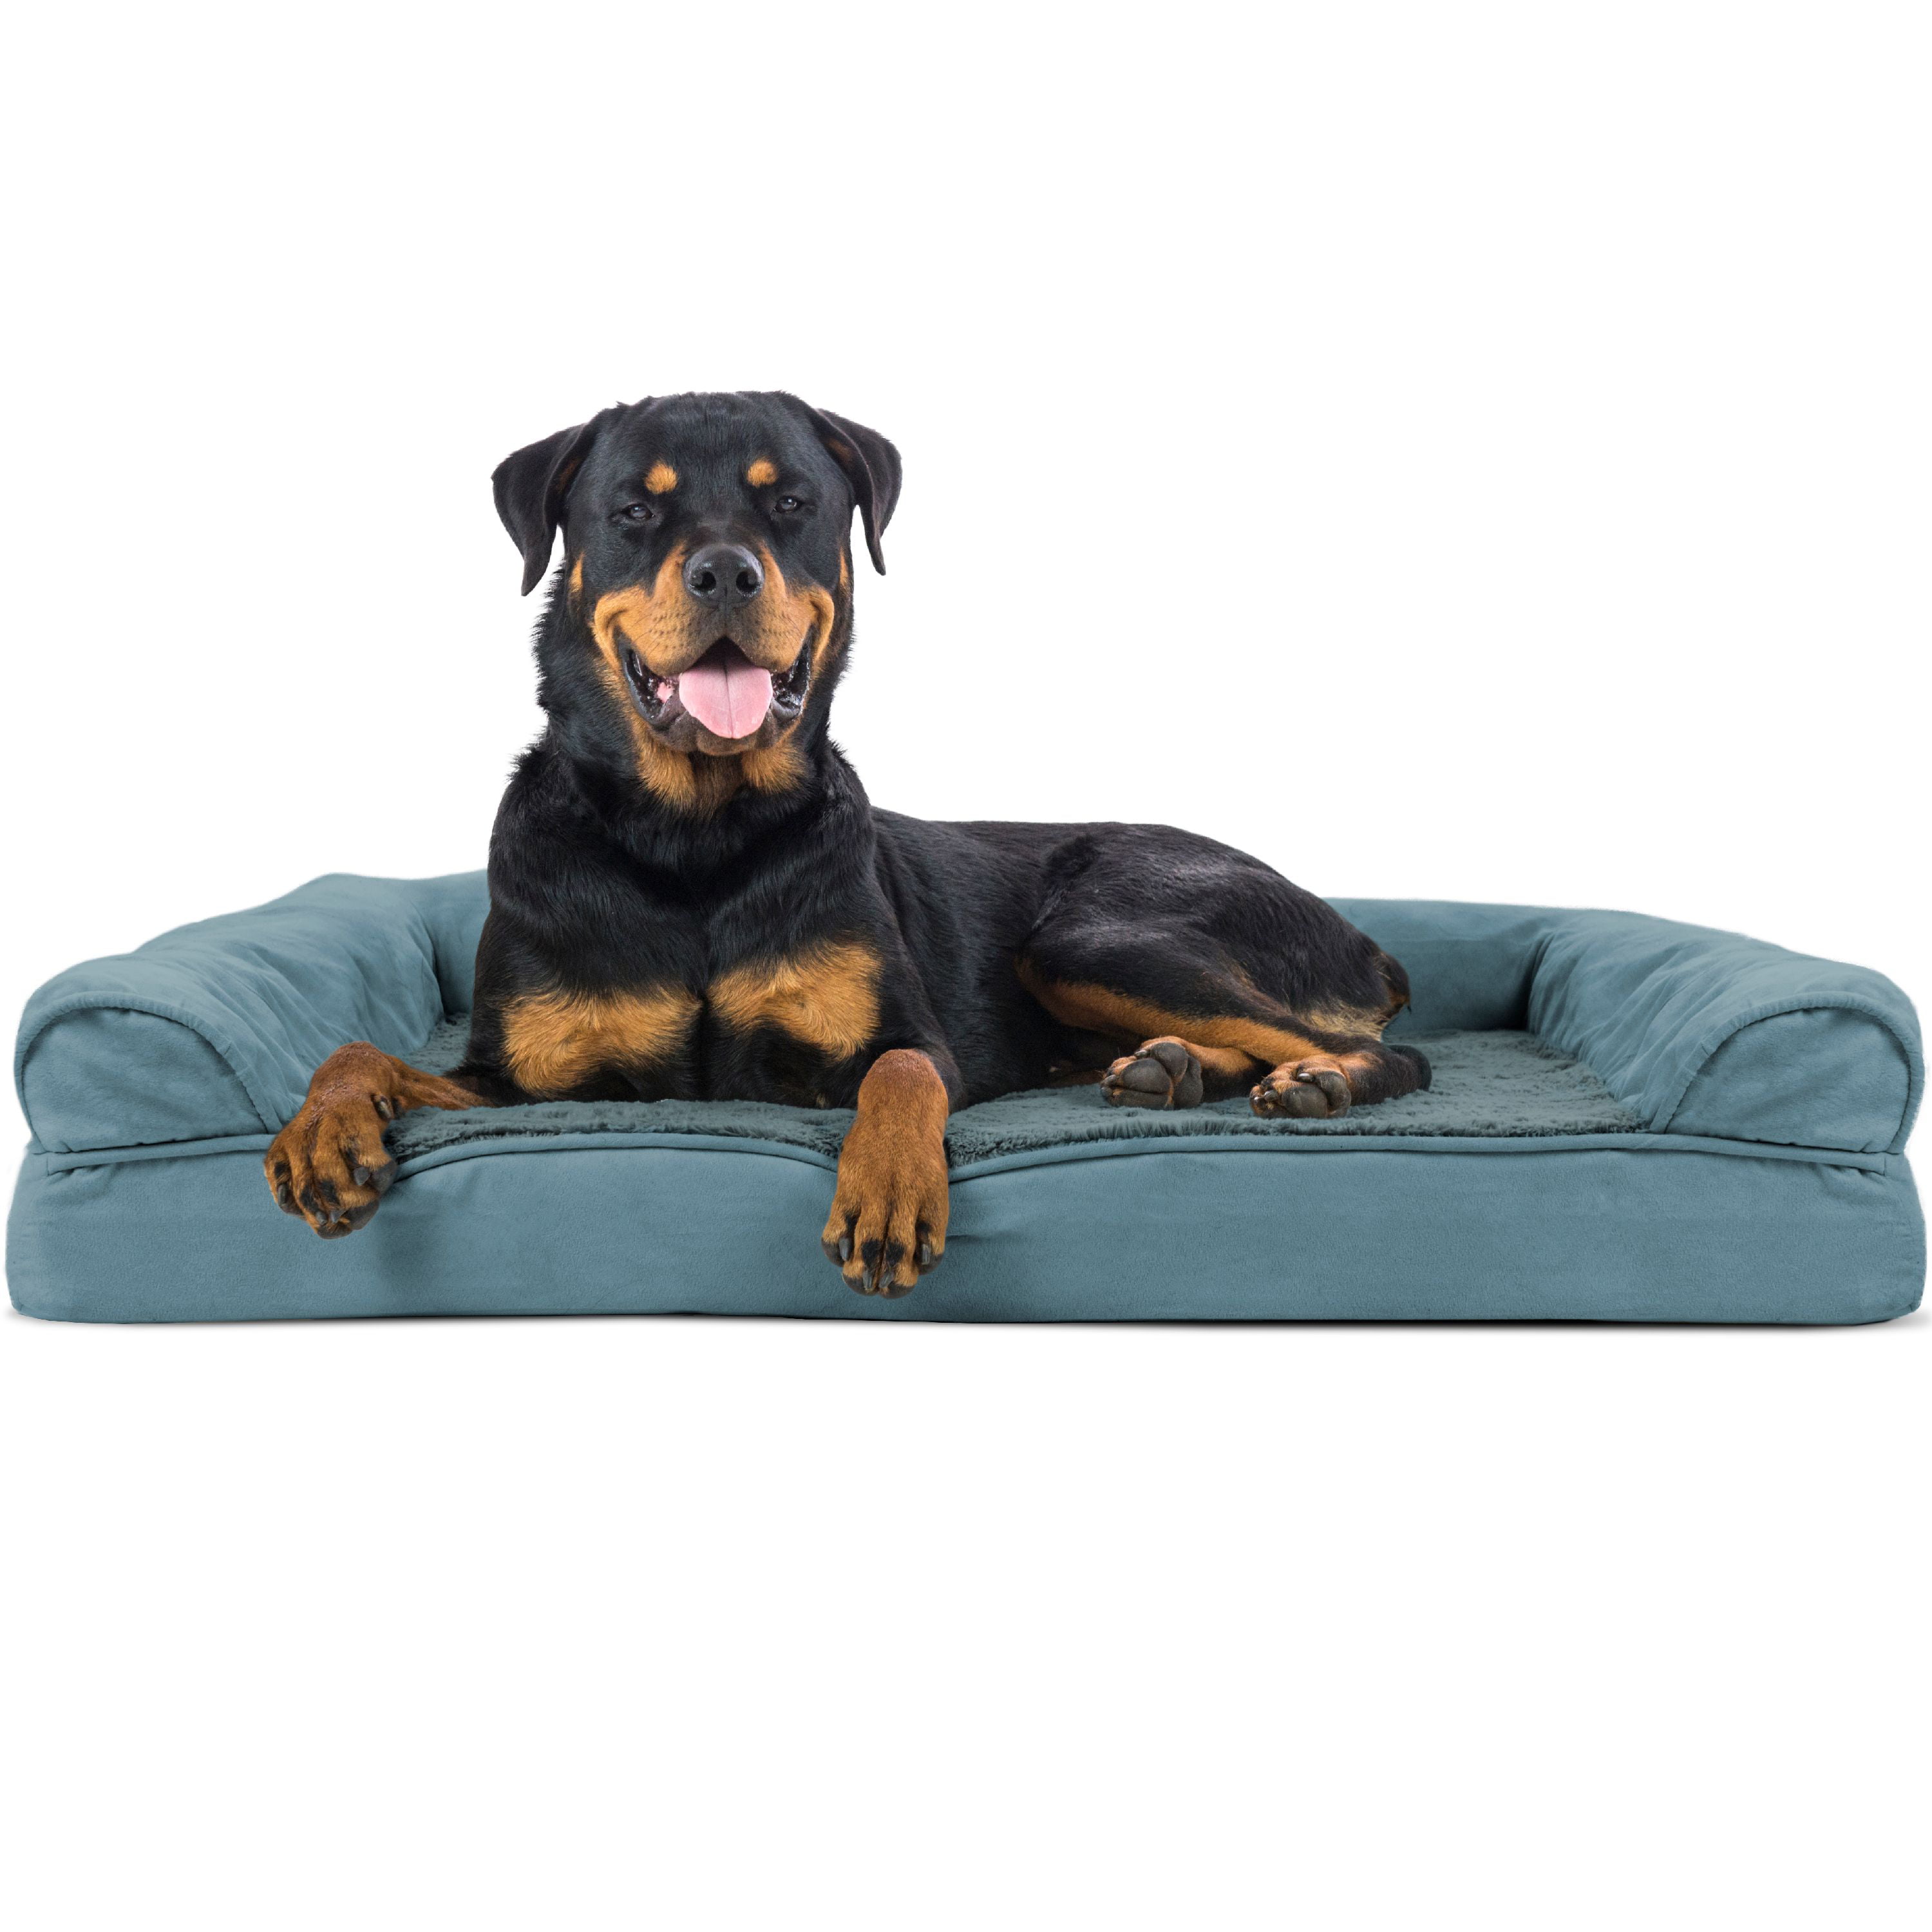 FurHaven Plush & Suede Orthopedic Sofa Dog Bed - Jumbo, Deep Pool